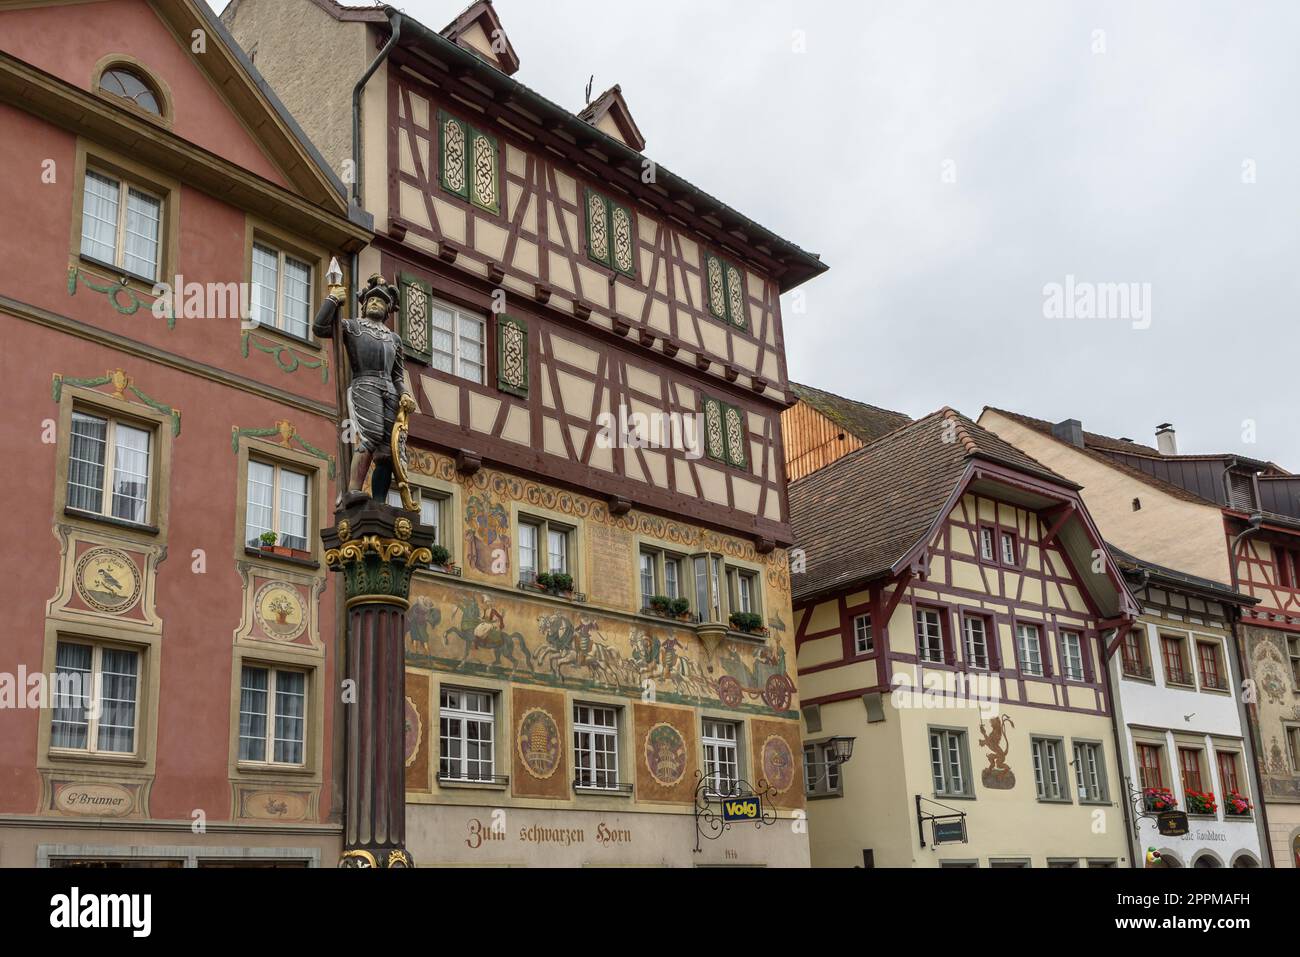 Sculpture sur fontaine et maisons à colombages avec peintures de façade dans la vieille ville médiévale de Stein am Rhein en Suisse Banque D'Images